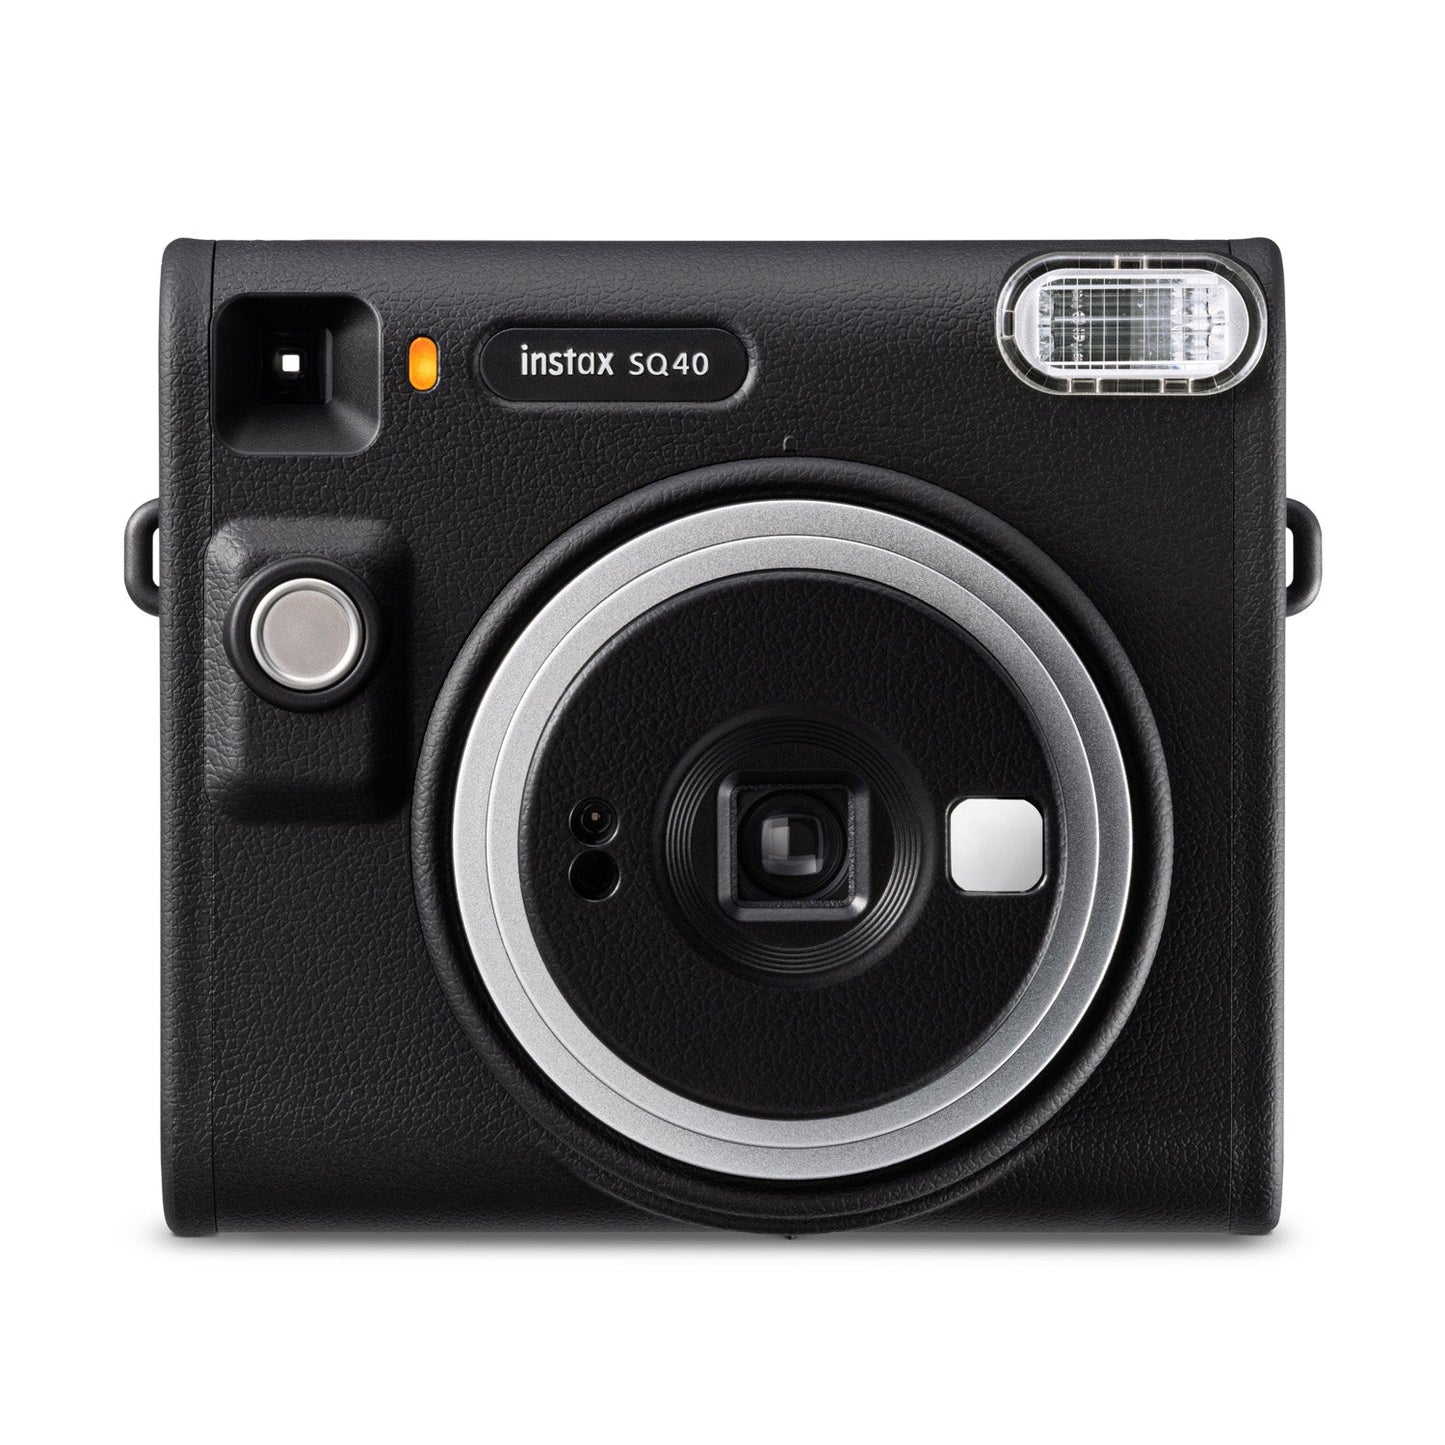 Fujifilm Instax Square SQ40 Instant Camera - Black - maplin.co.uk